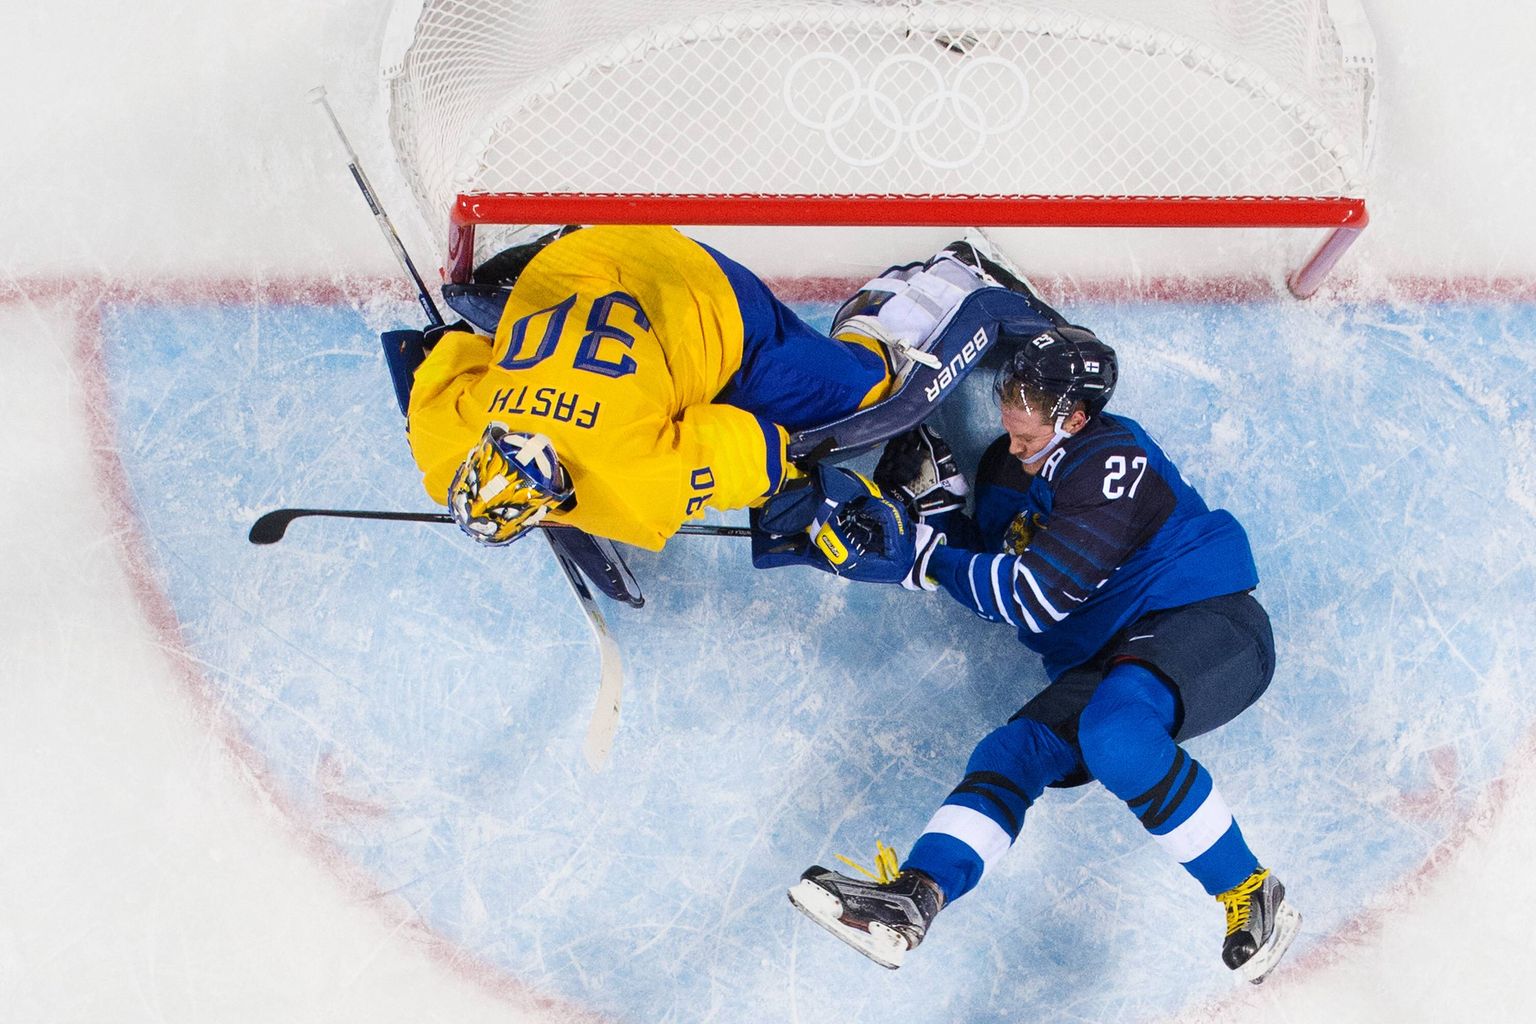 Soome jäähokikoondis kaotas tänavu olümpia hokiturniiril Rootsile, alla jäädi naabritele ka olümpiamängude taotlemisel.